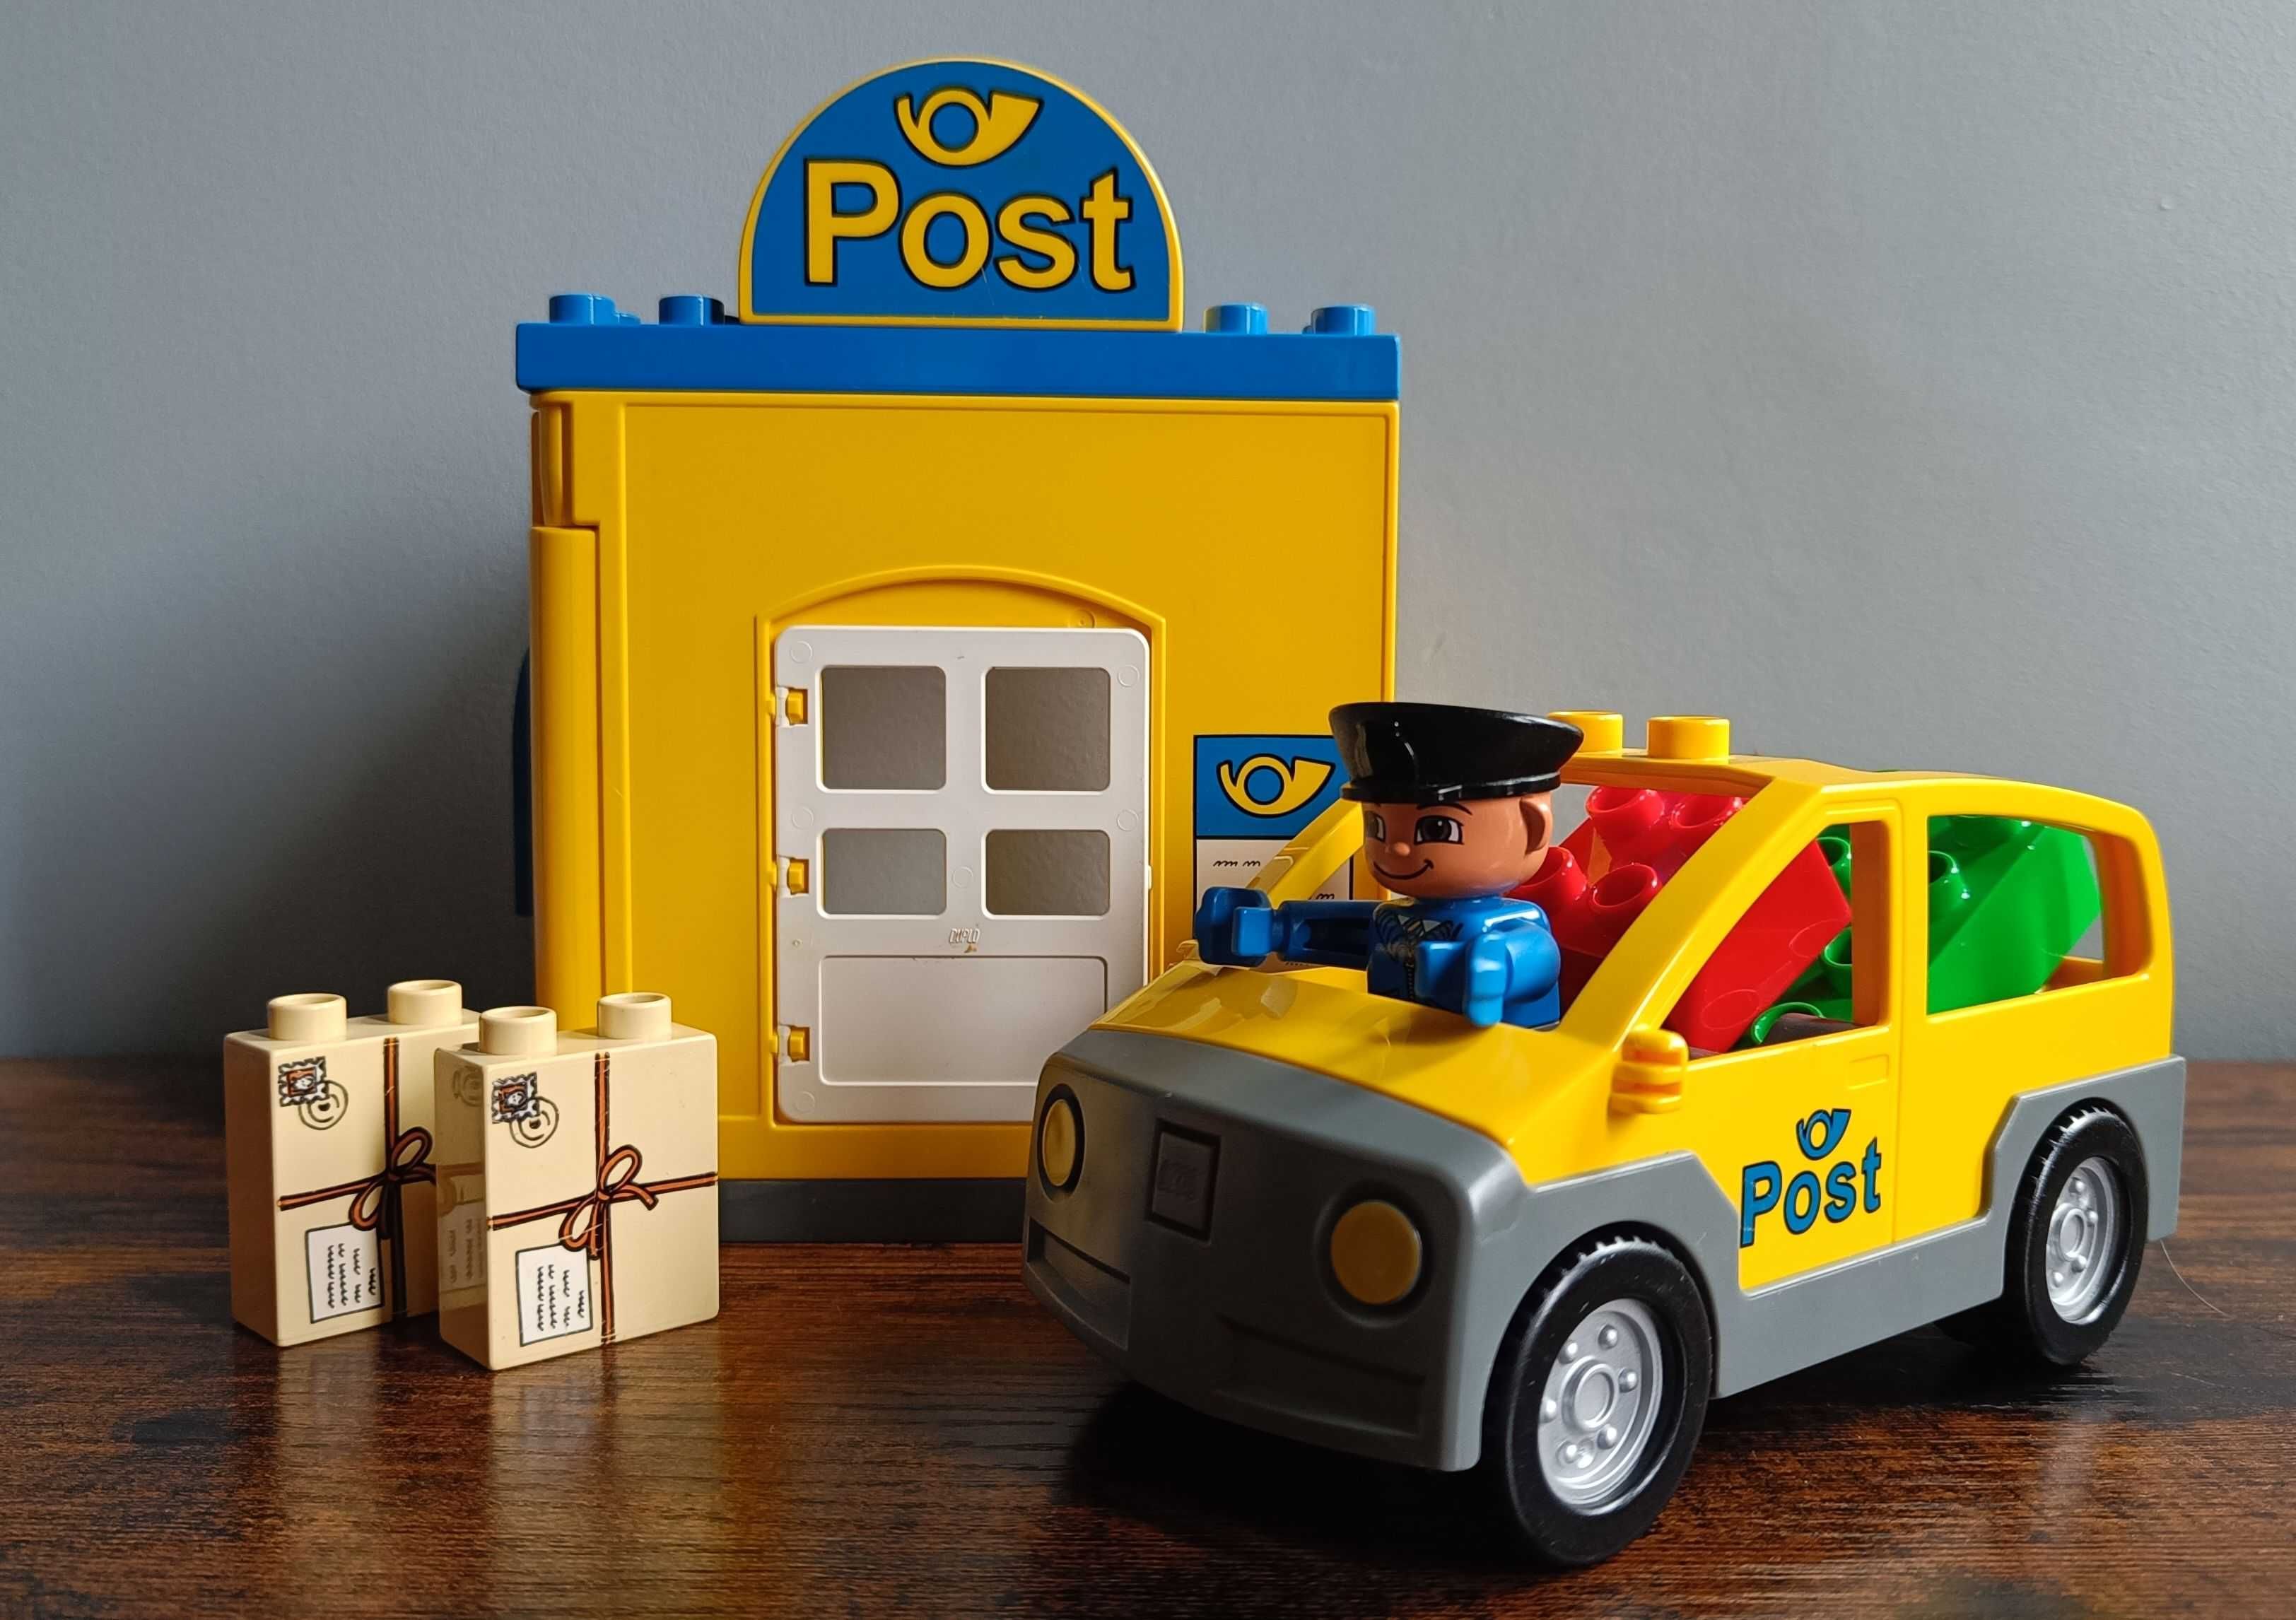 Lego Duplo Poczta (Post Office) 4662